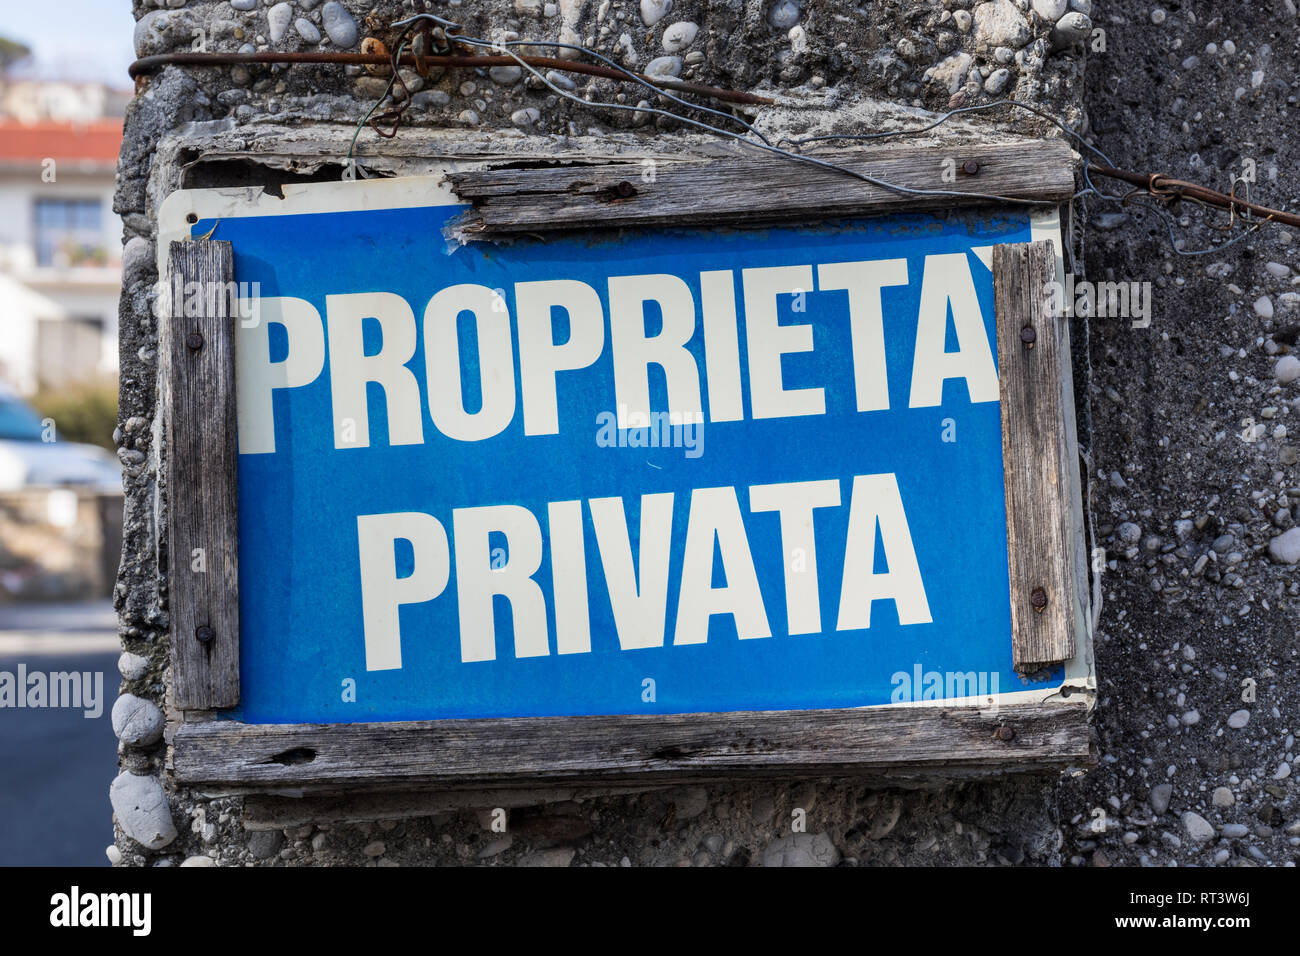 Proprietà privata (Private property) sign Stock Photo